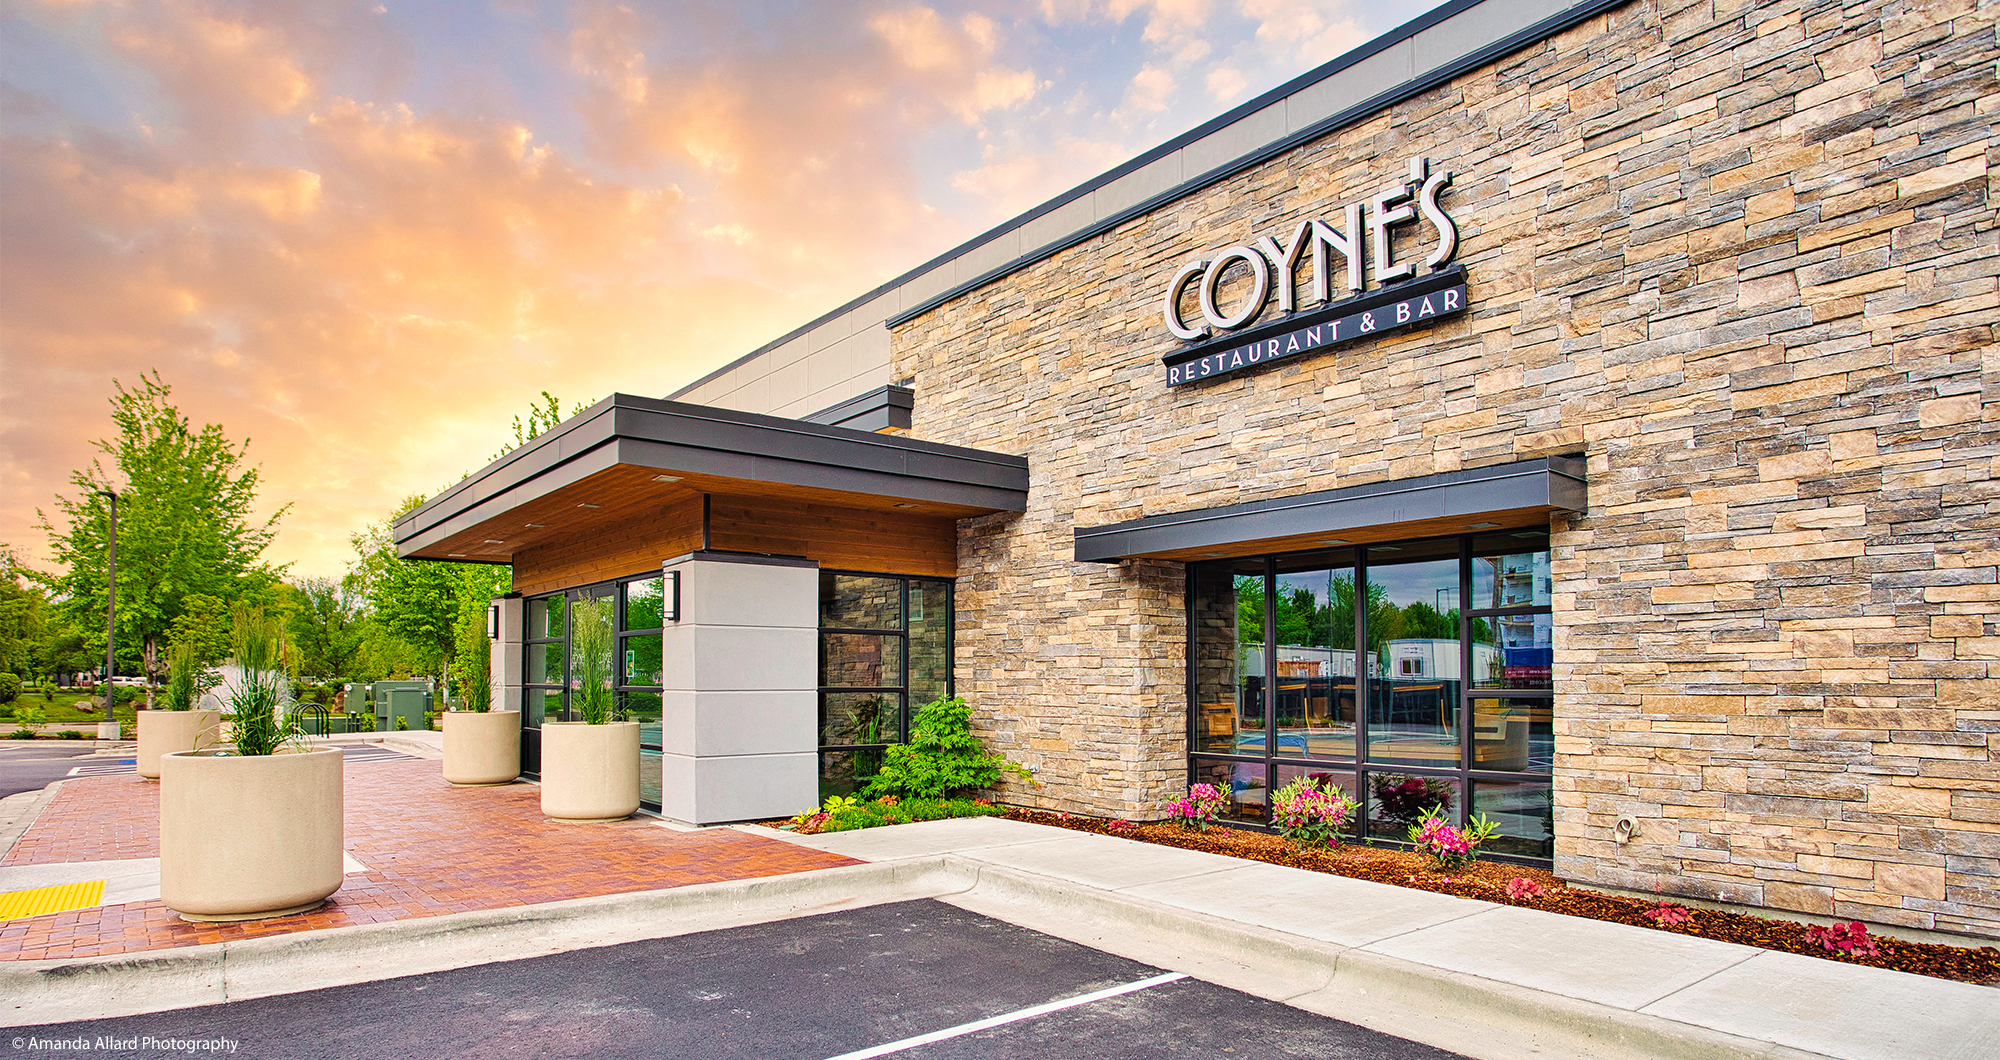 Coyne’s Restaurant & Bar